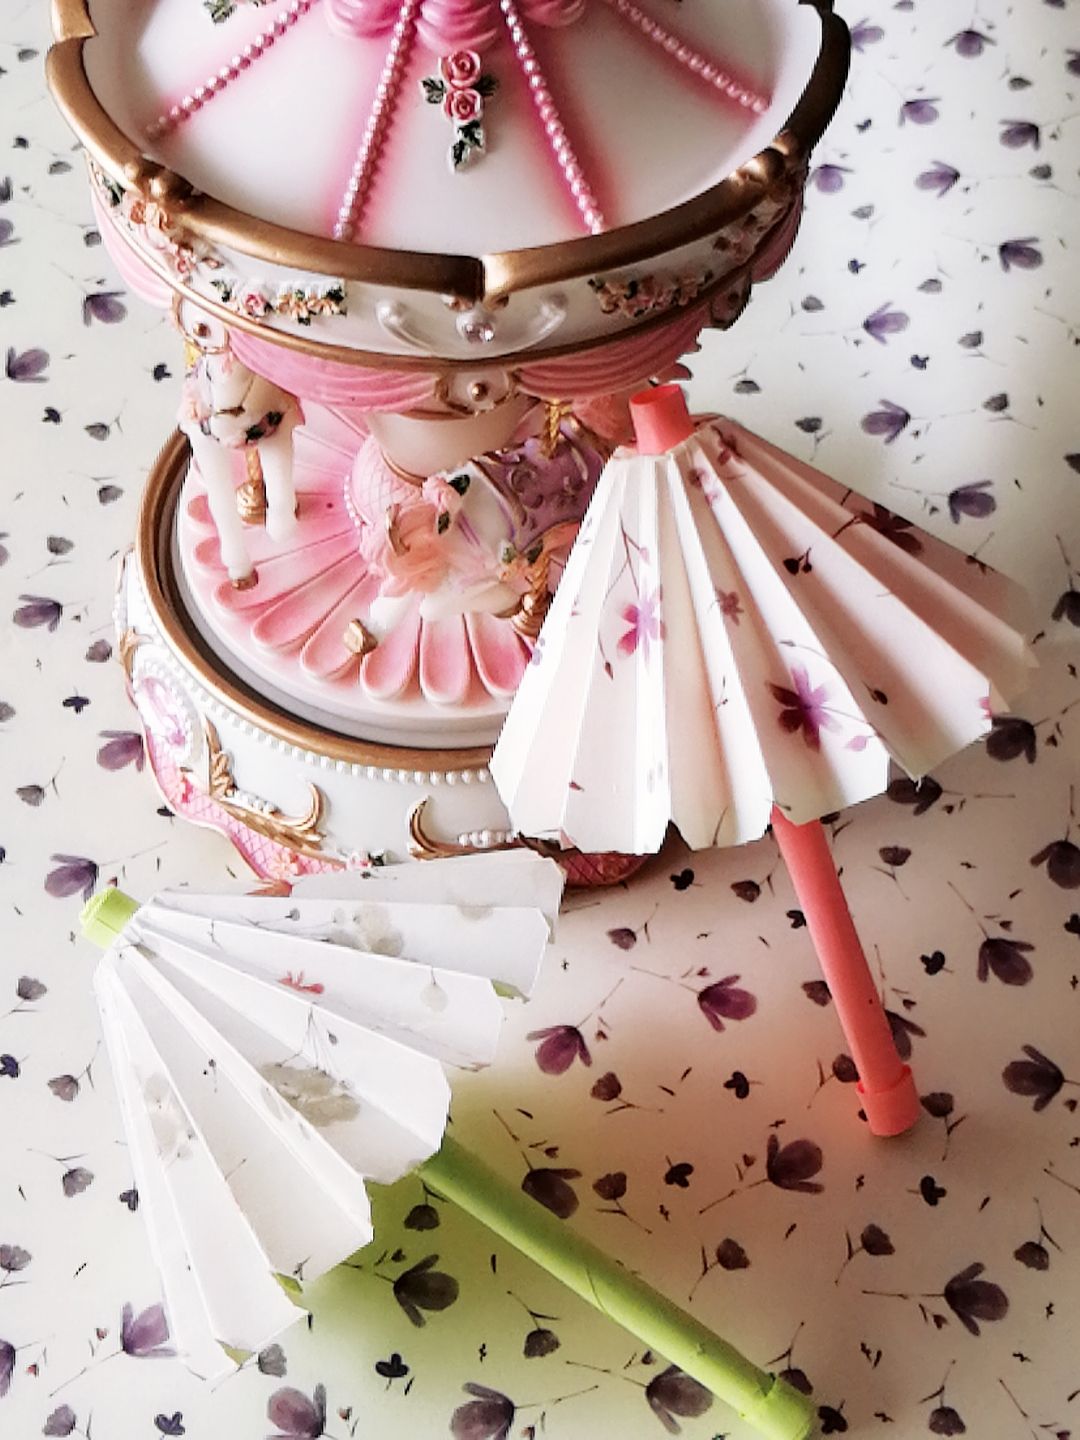 大家好( ﾟ∀ ﾟ)小时候吃蛋糕特别喜欢里面的小伞，今天我们就来折一把可爱的小伞，很简单。